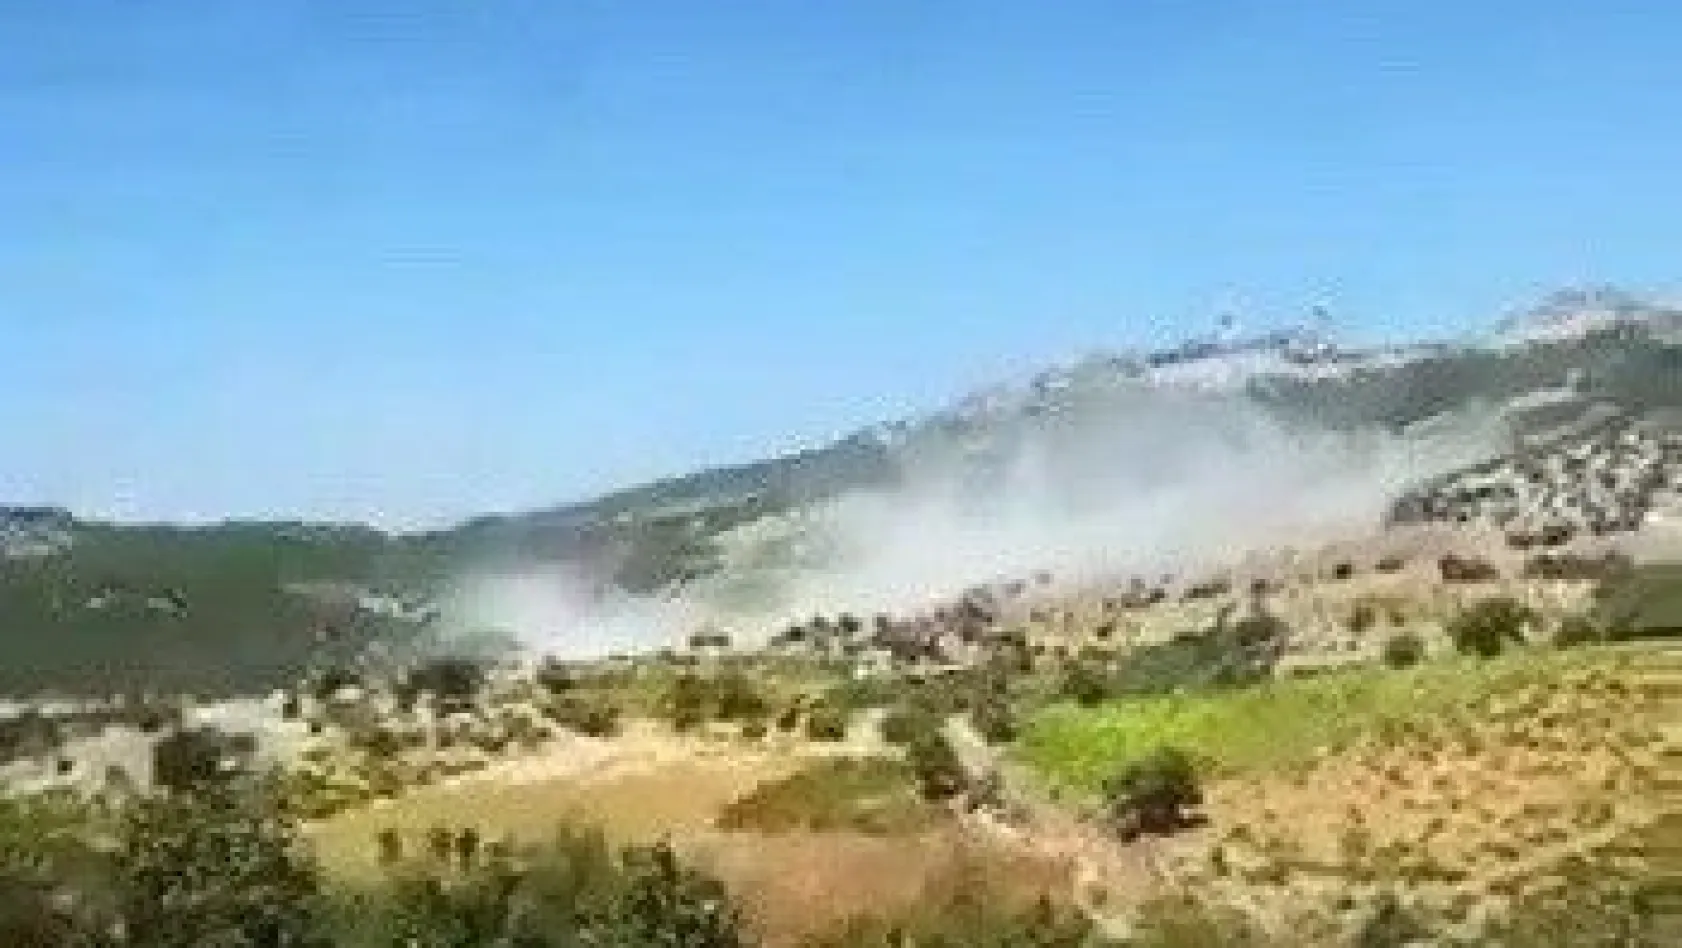 Adıyaman'da 4 askerin şehit olduğu terör olayından sıcak görüntü
